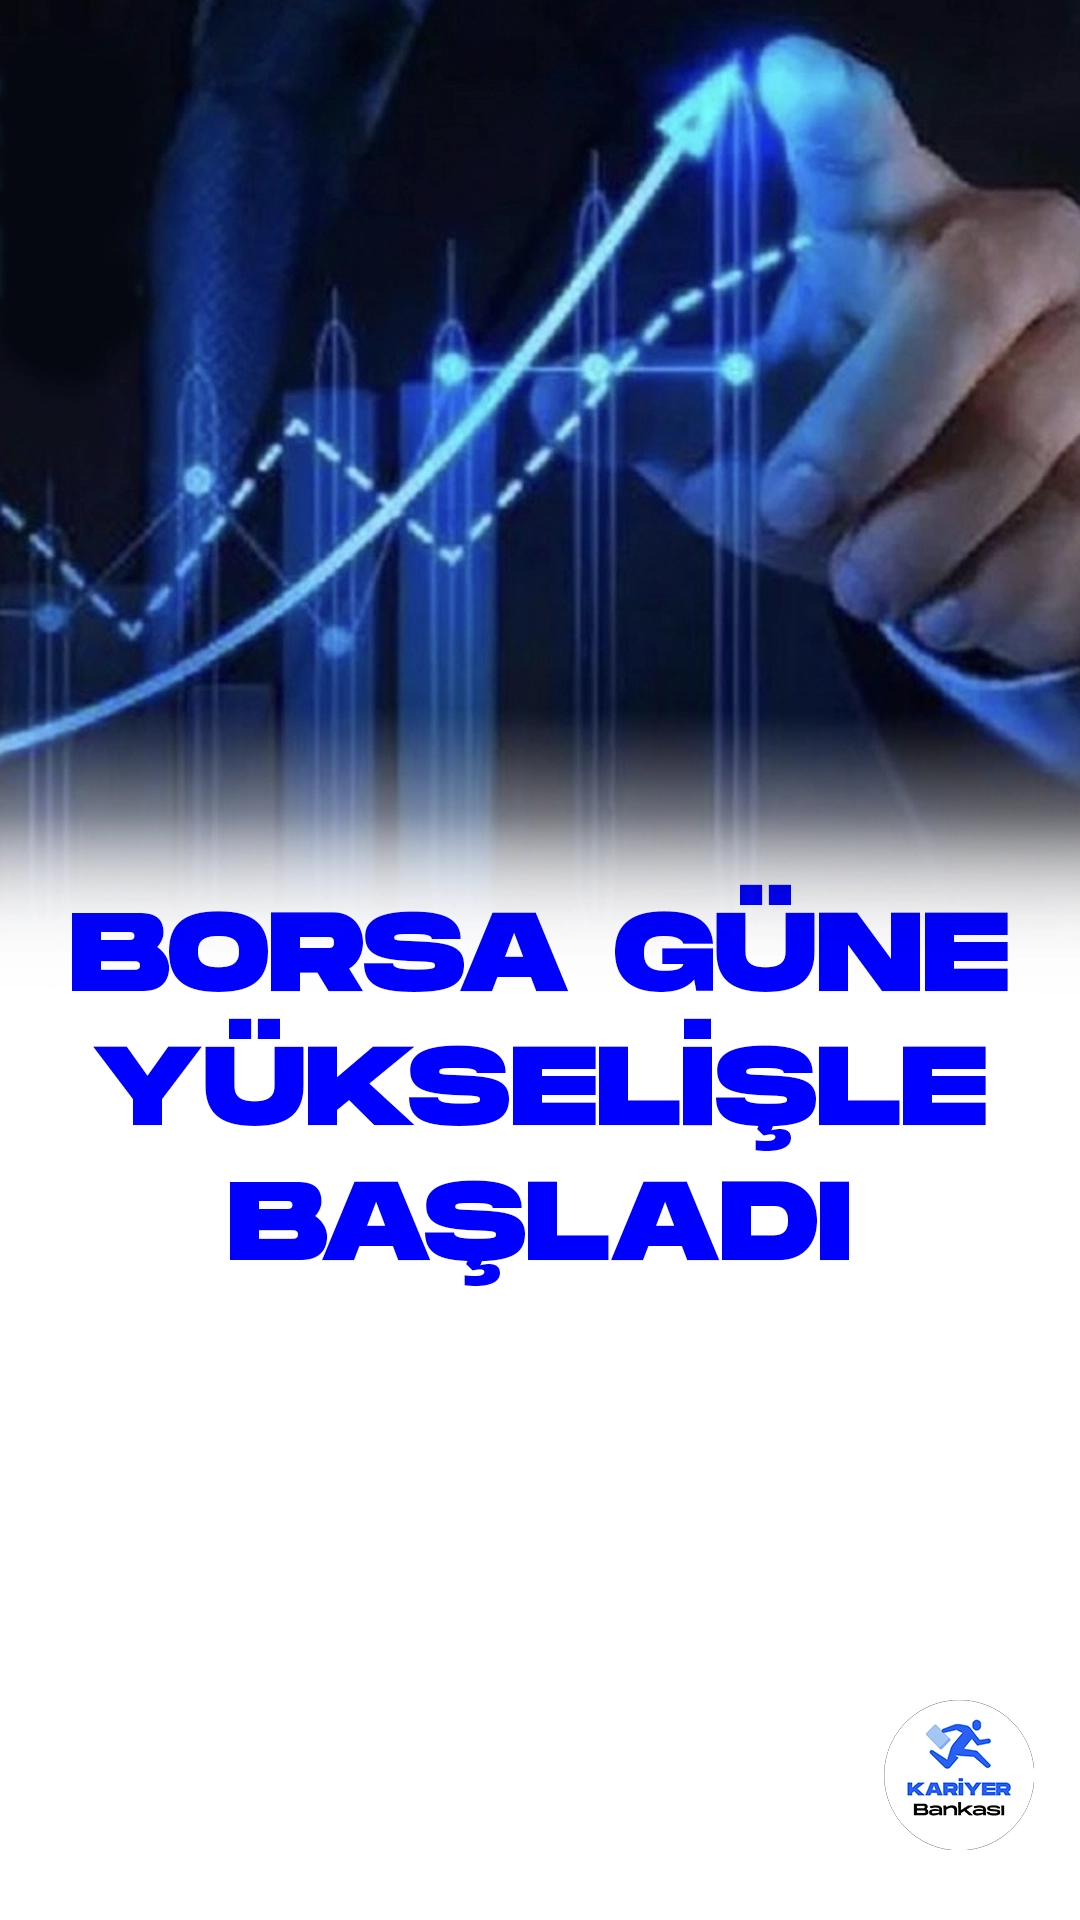 Borsa Güne Yükselişle Başladı.Borsa İstanbul'da işlem gören BIST 100 endeksi, güne yüzde 0,11'lük bir artışla 8.066,52 puandan başladı. Açılışta, endeks önceki kapanışa göre 9,10 puan yükselerek yüzde 0,11'lik bir değer kazanç elde etti.